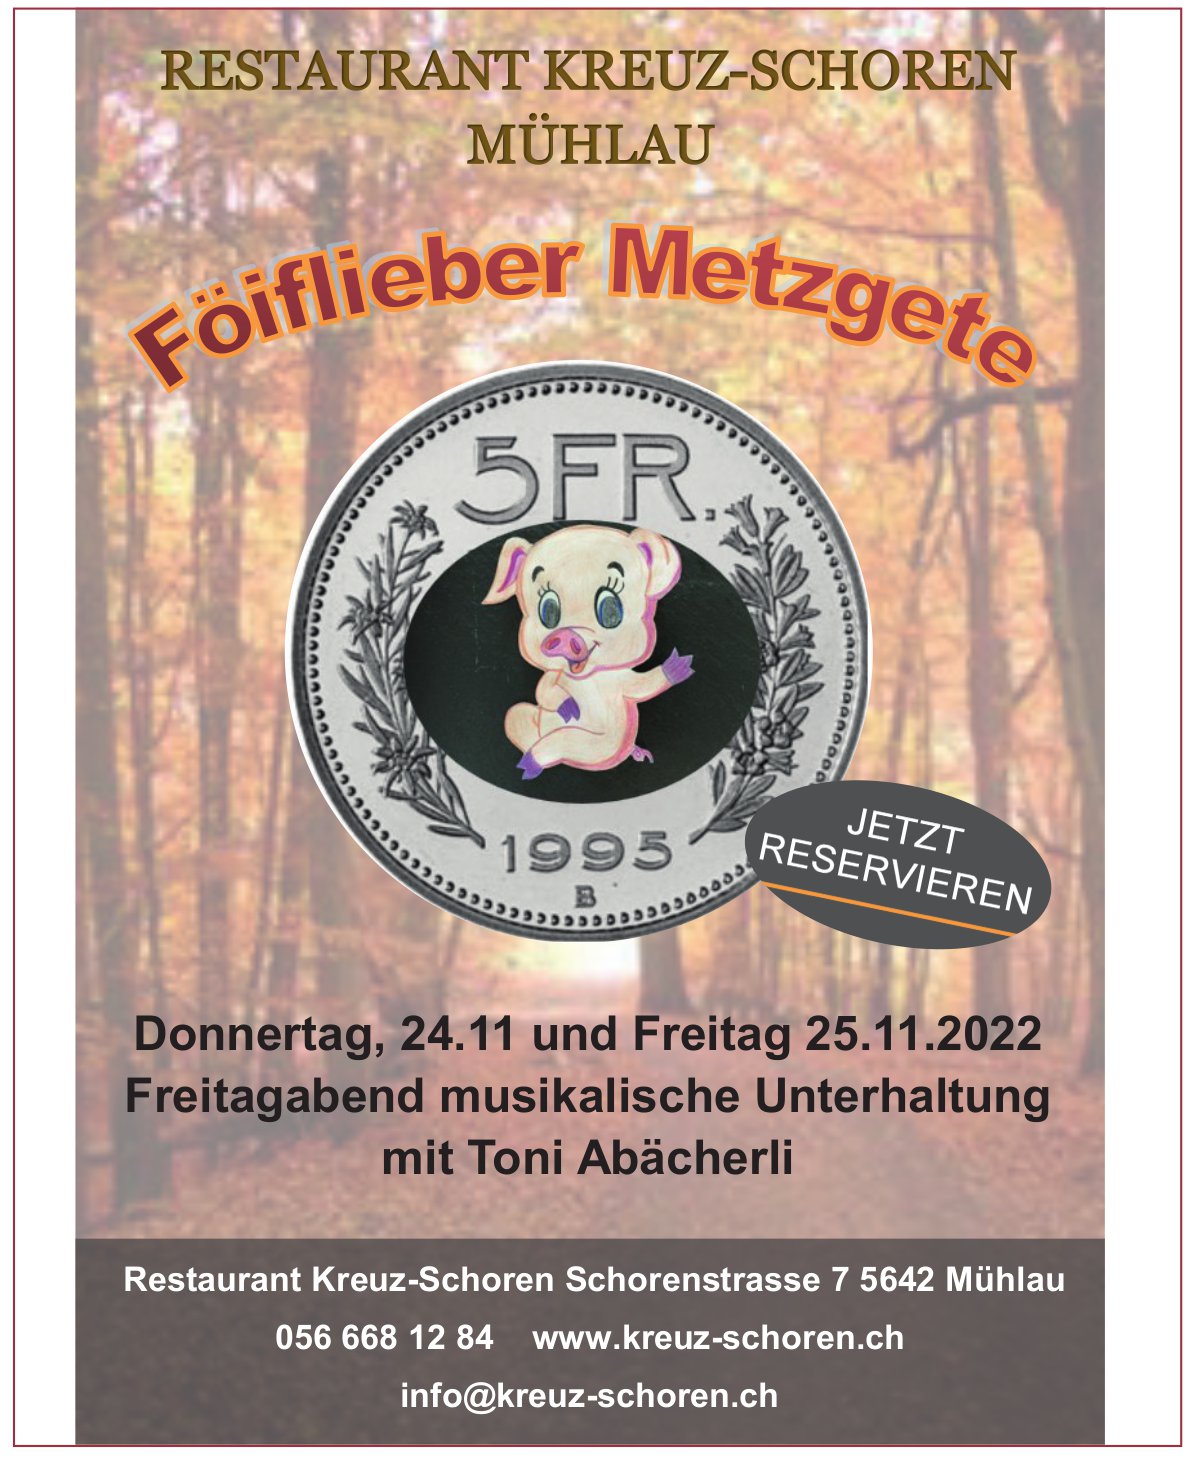 Reastaurant Kreuz Schoren, Mühlau - Föiflieber Metzgete